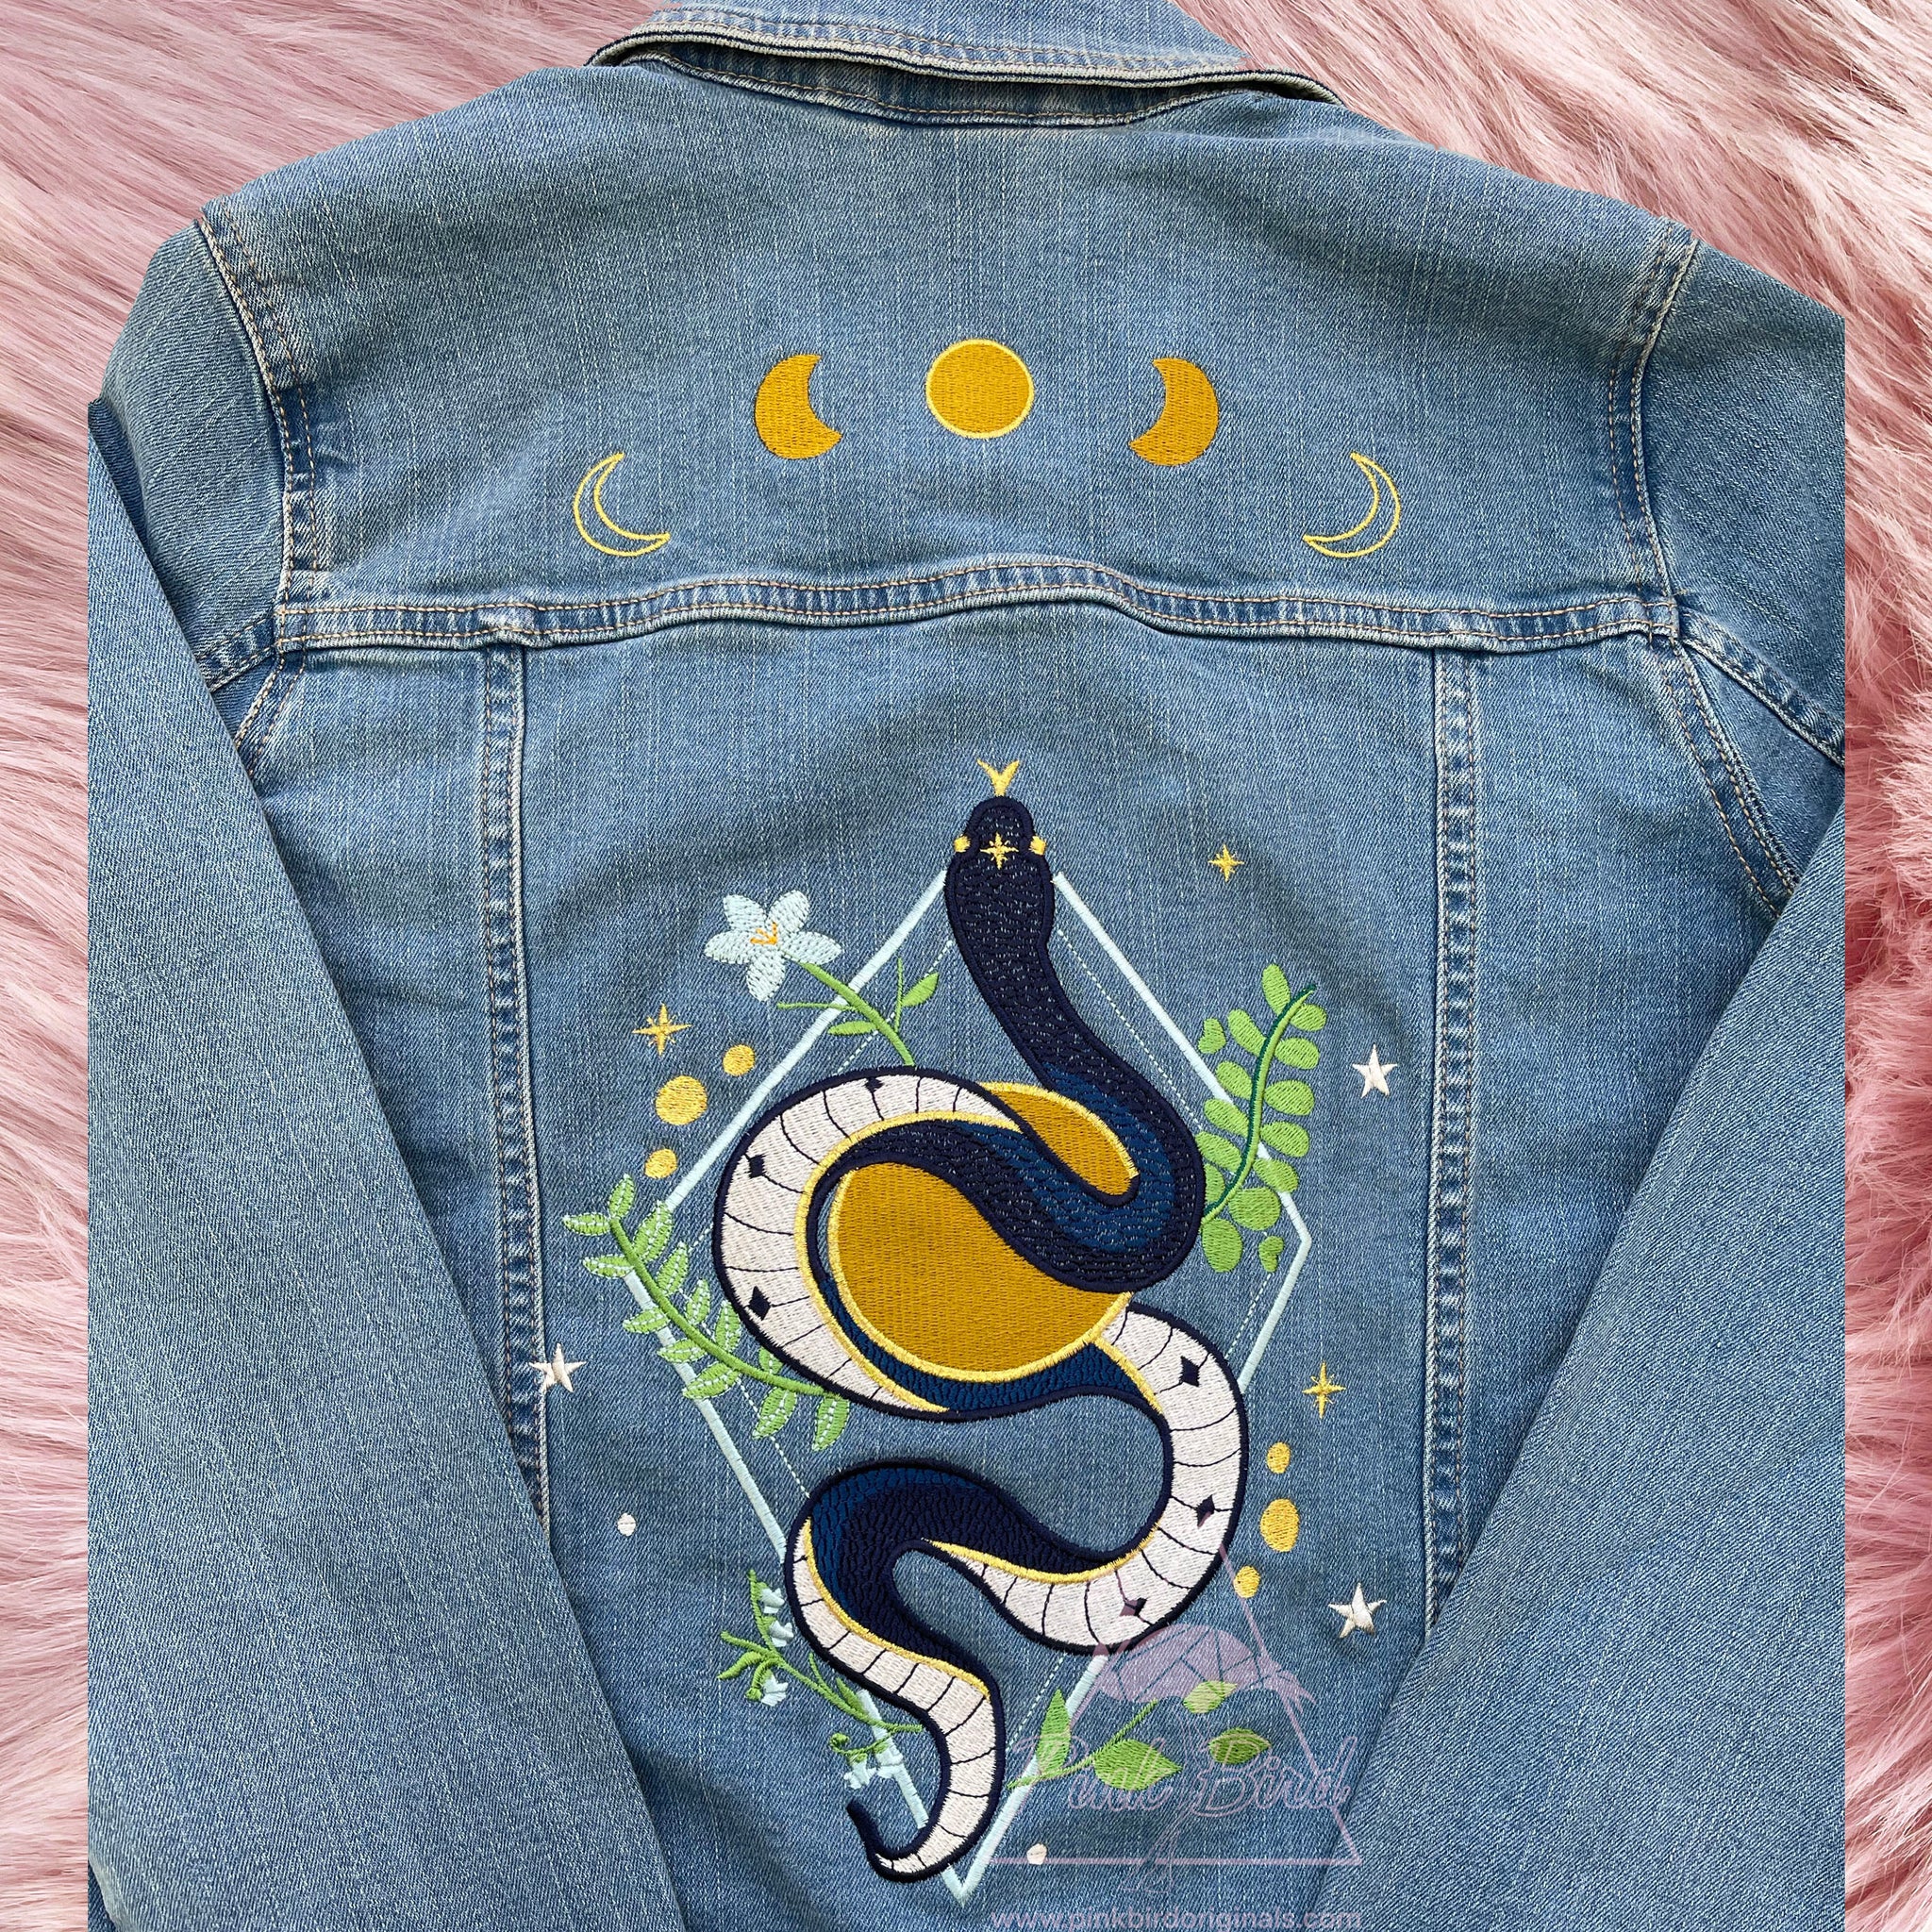 Embroidered Snake on Denim Jacket